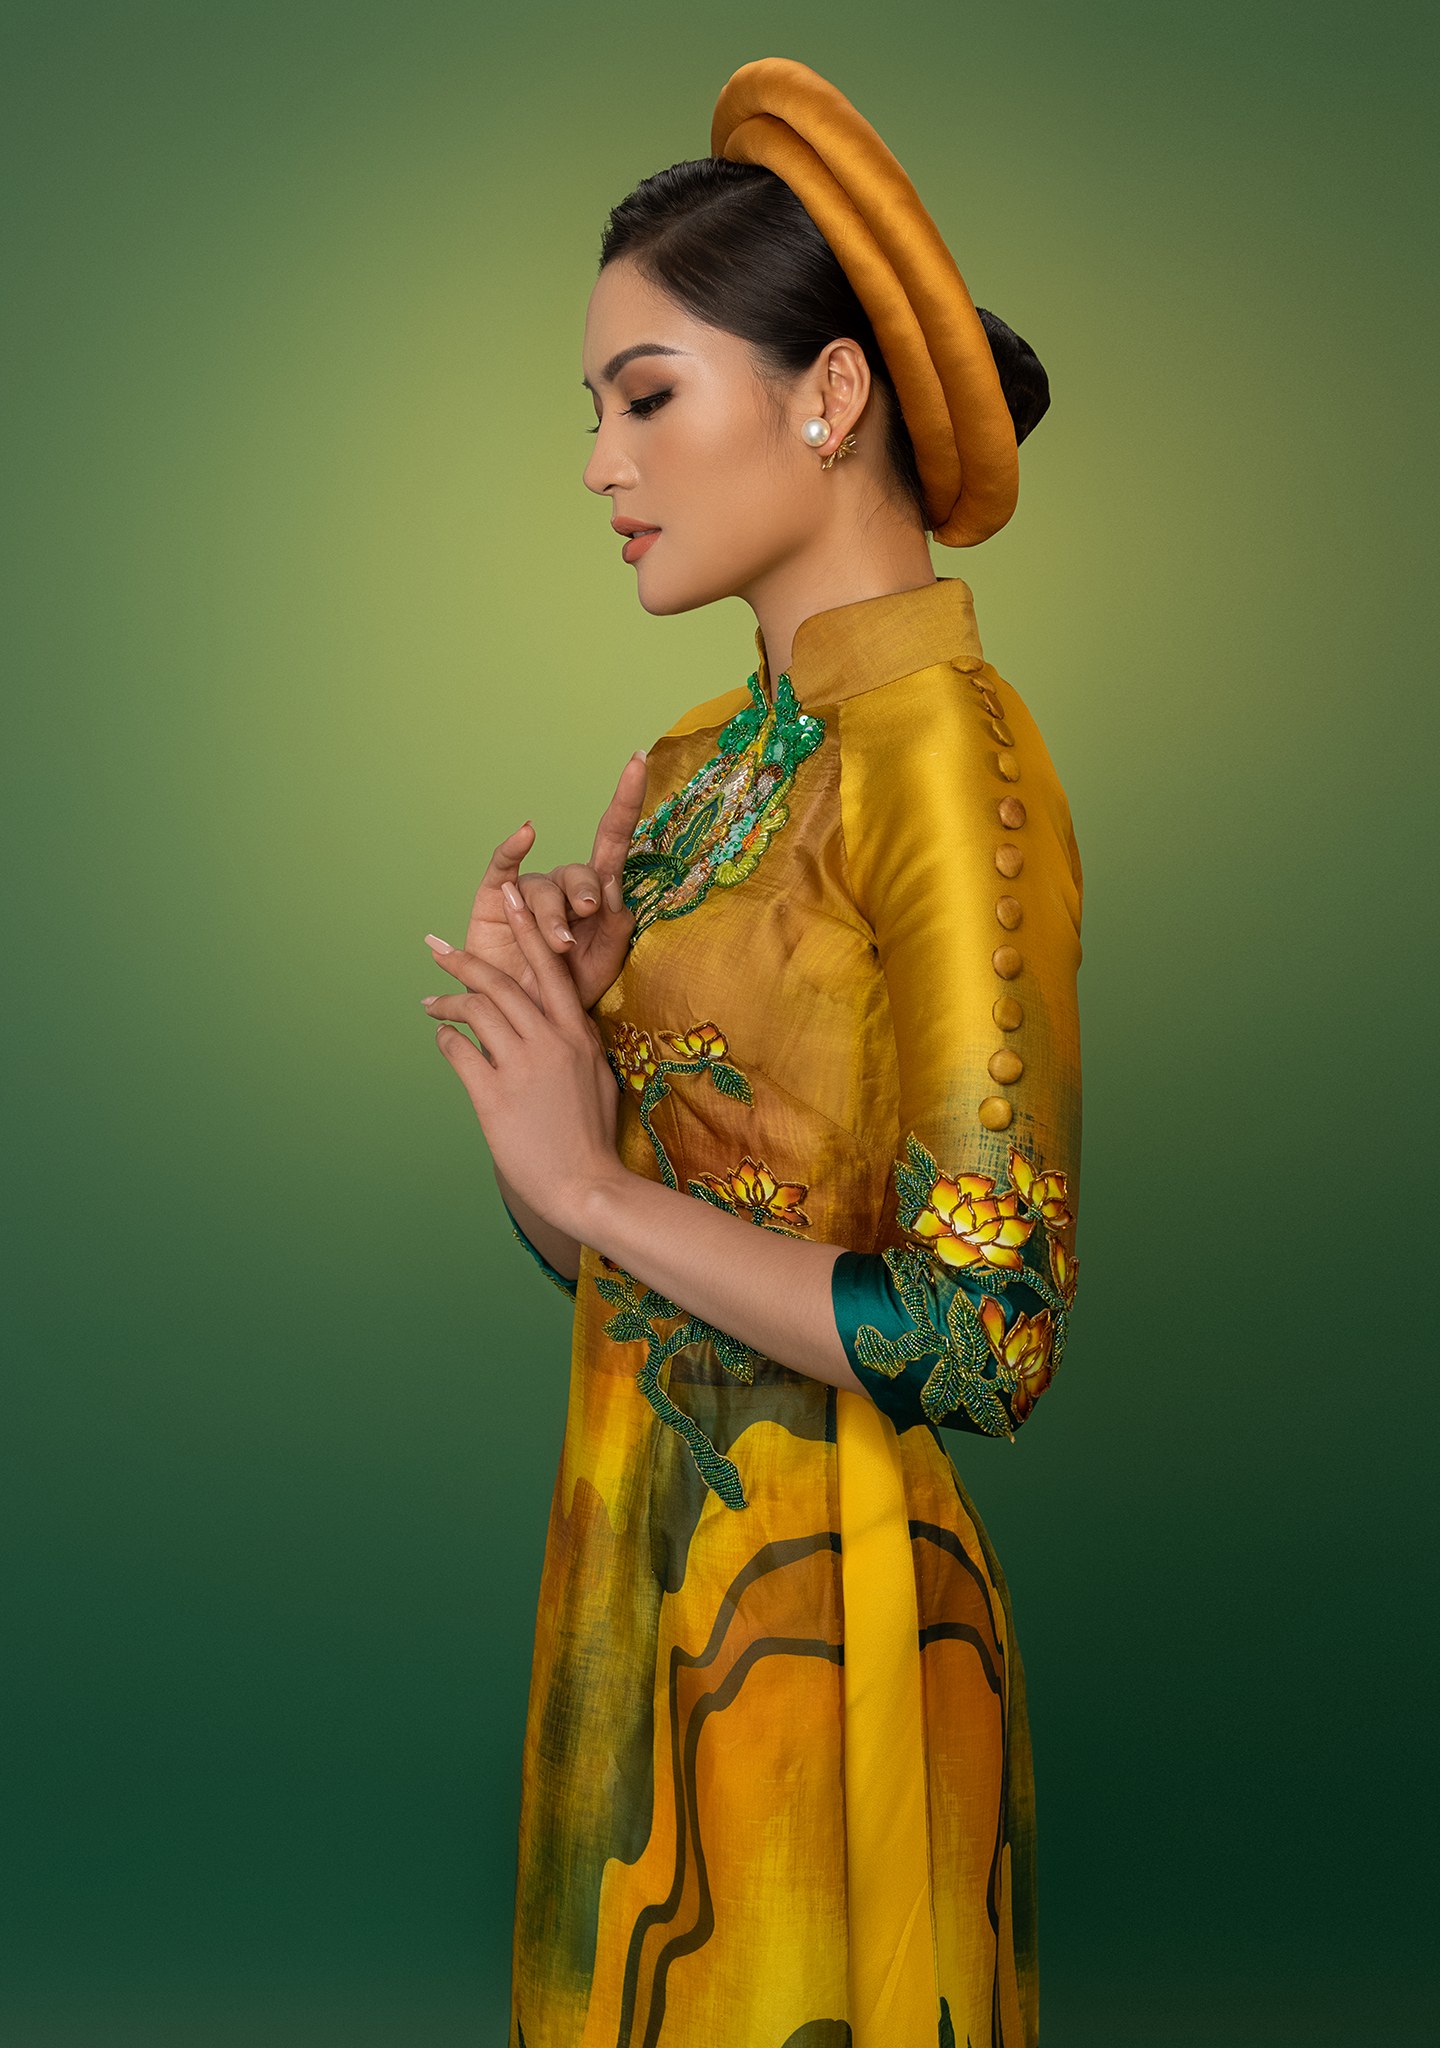 Tại Hoa hậu Trái đất 2020, thí sinh Trung Quốc mặc áo dài Việt Nam trong phần thi tài năng gây xôn xao dư luận. 